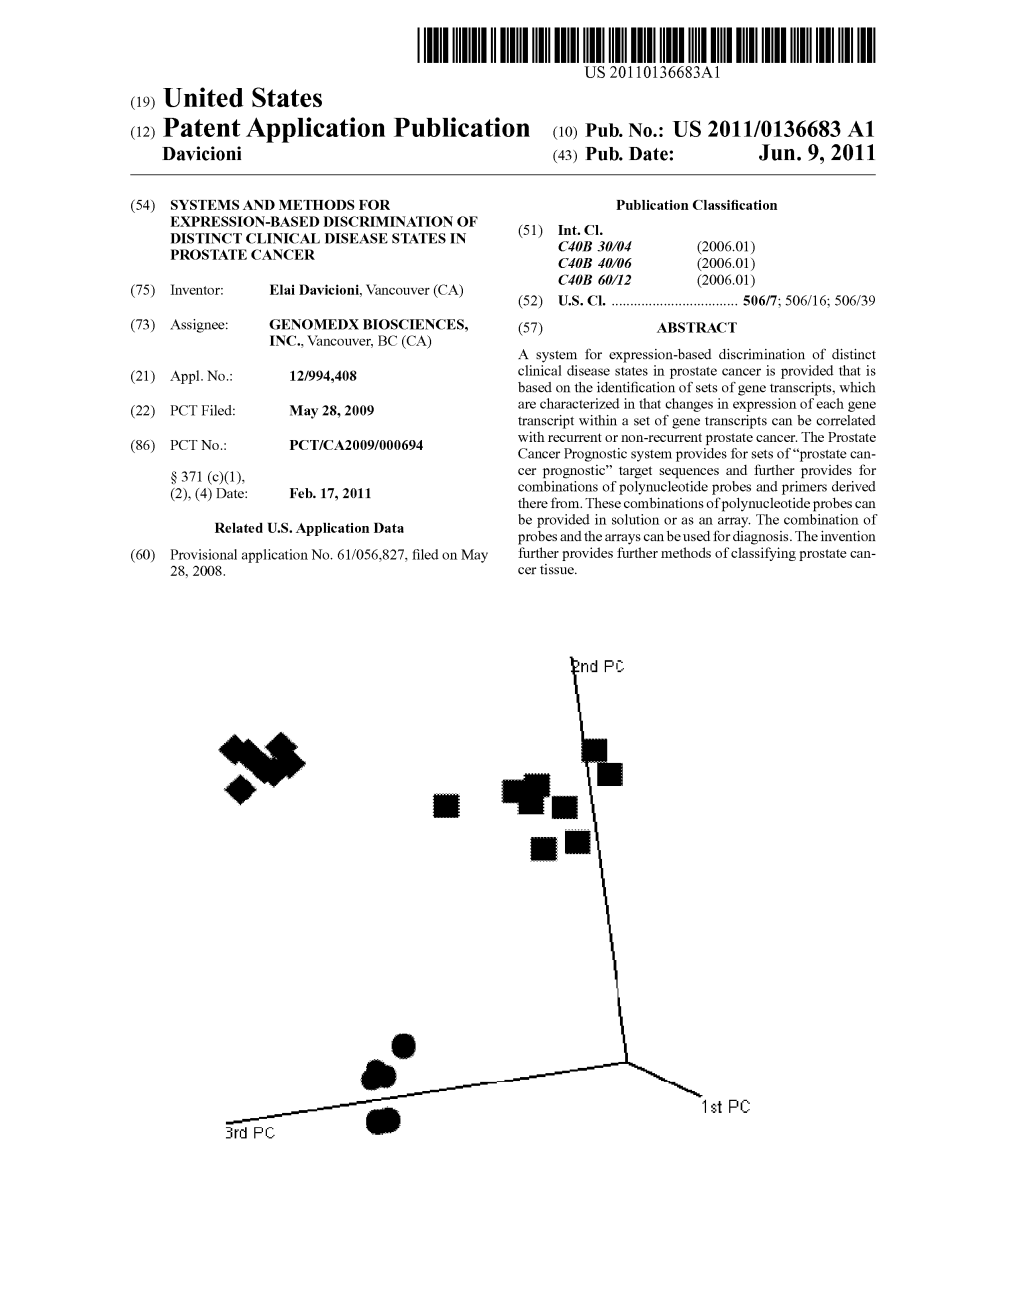 (12) Patent Application Publication (10) Pub. No.: US 2011/013.6683 A1 Davicioni (43) Pub